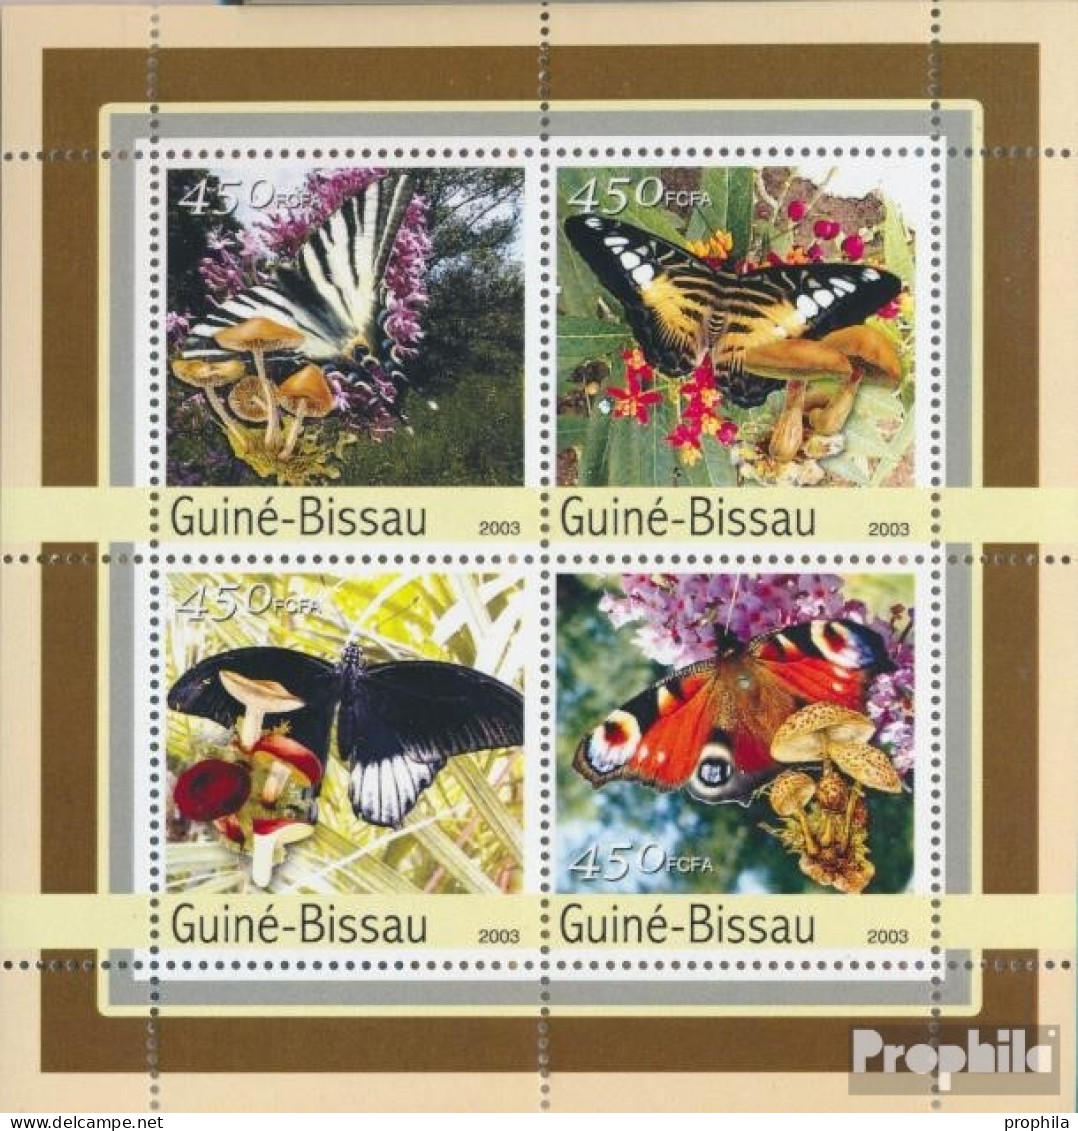 Guinea-Bissau 2087-2090 Kleinbogen (kompl. Ausgabe) Postfrisch 2003 Schmetterlinge, Pilze - Guinea-Bissau